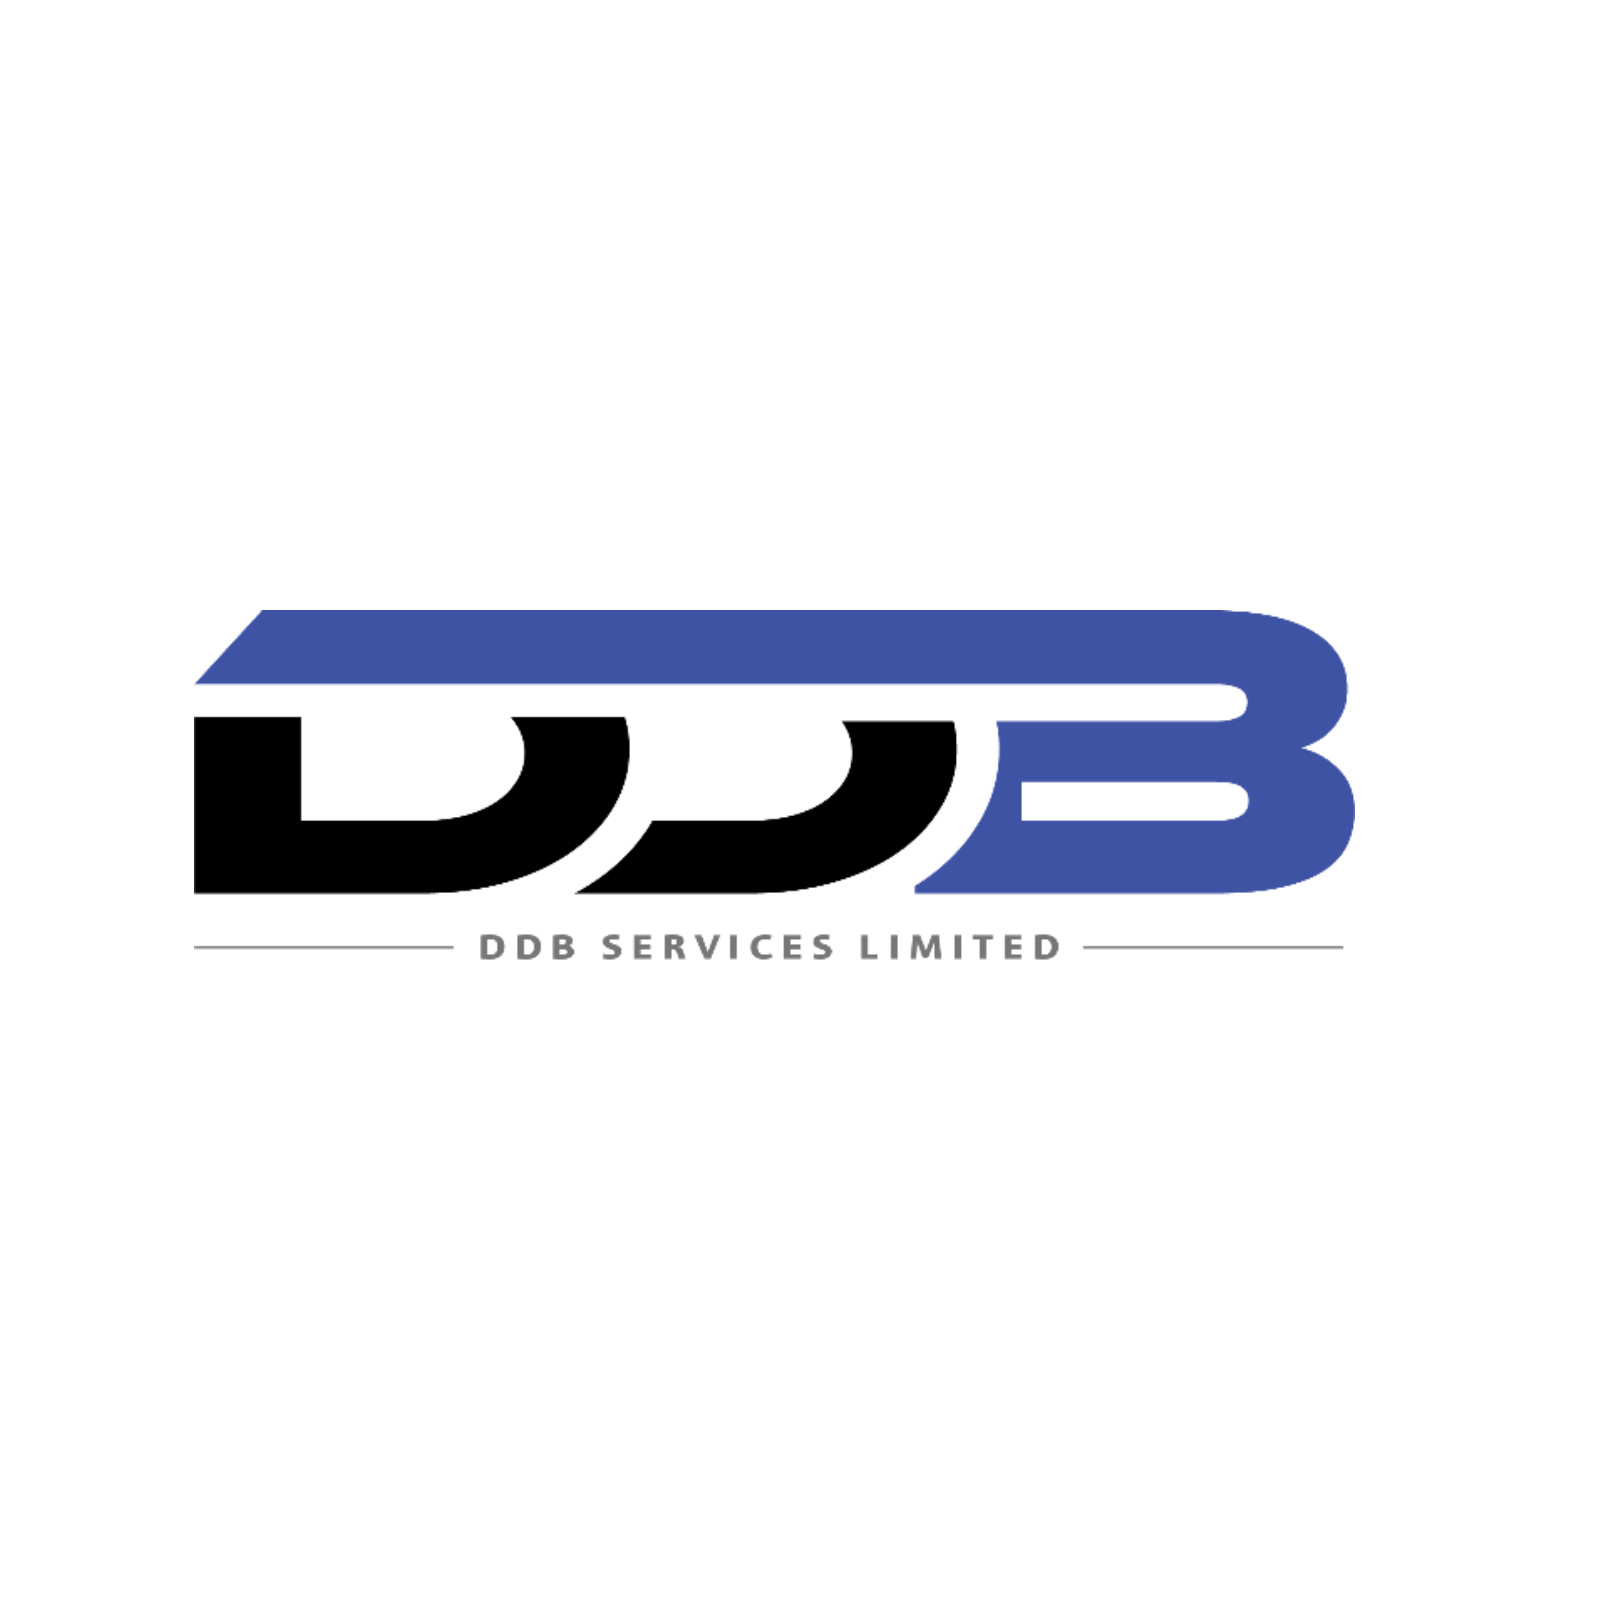 Australia / New Zealand / DDB Services Ltd.